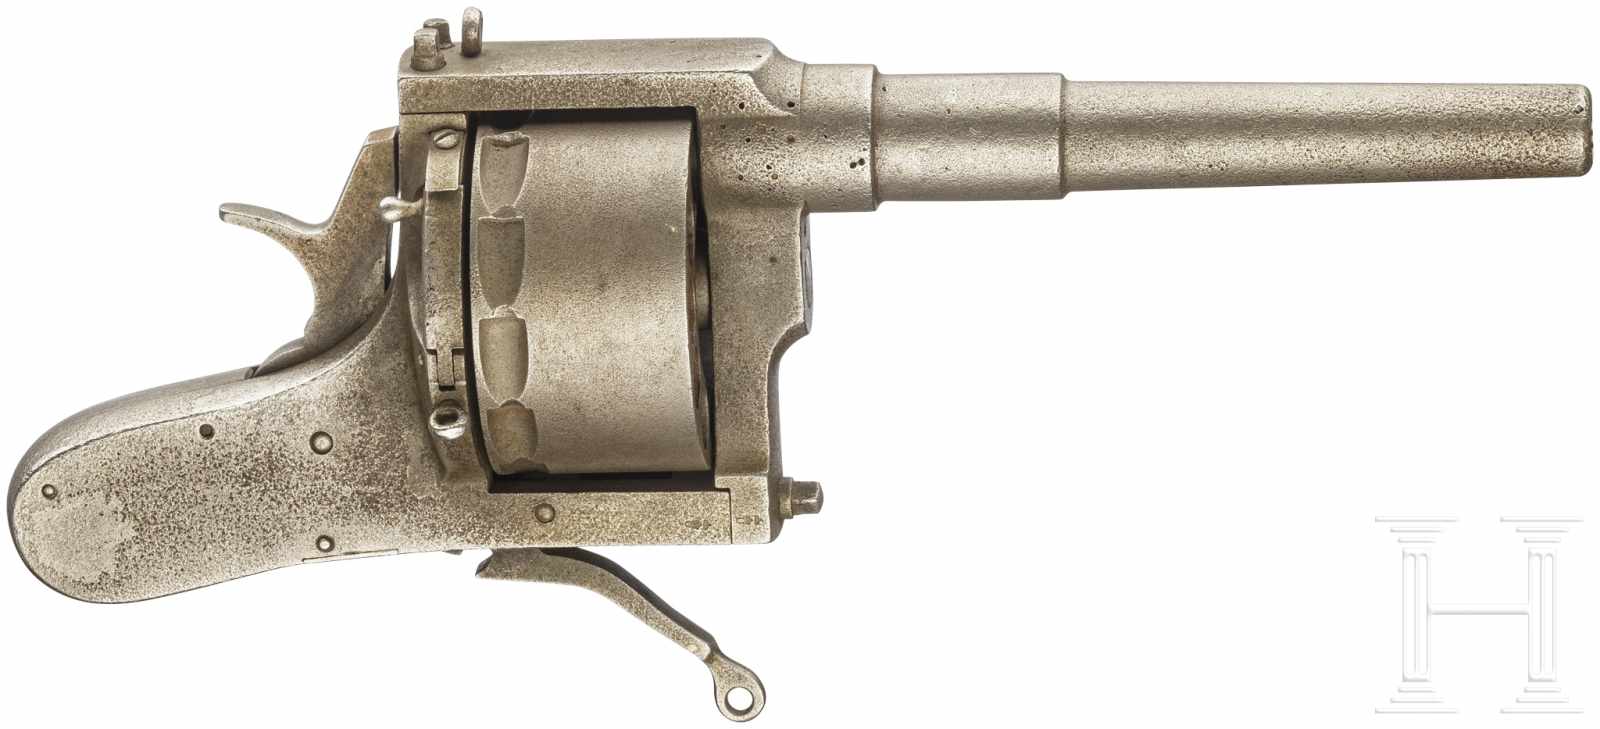 A ship revolver, circa 1900 - Image 2 of 6